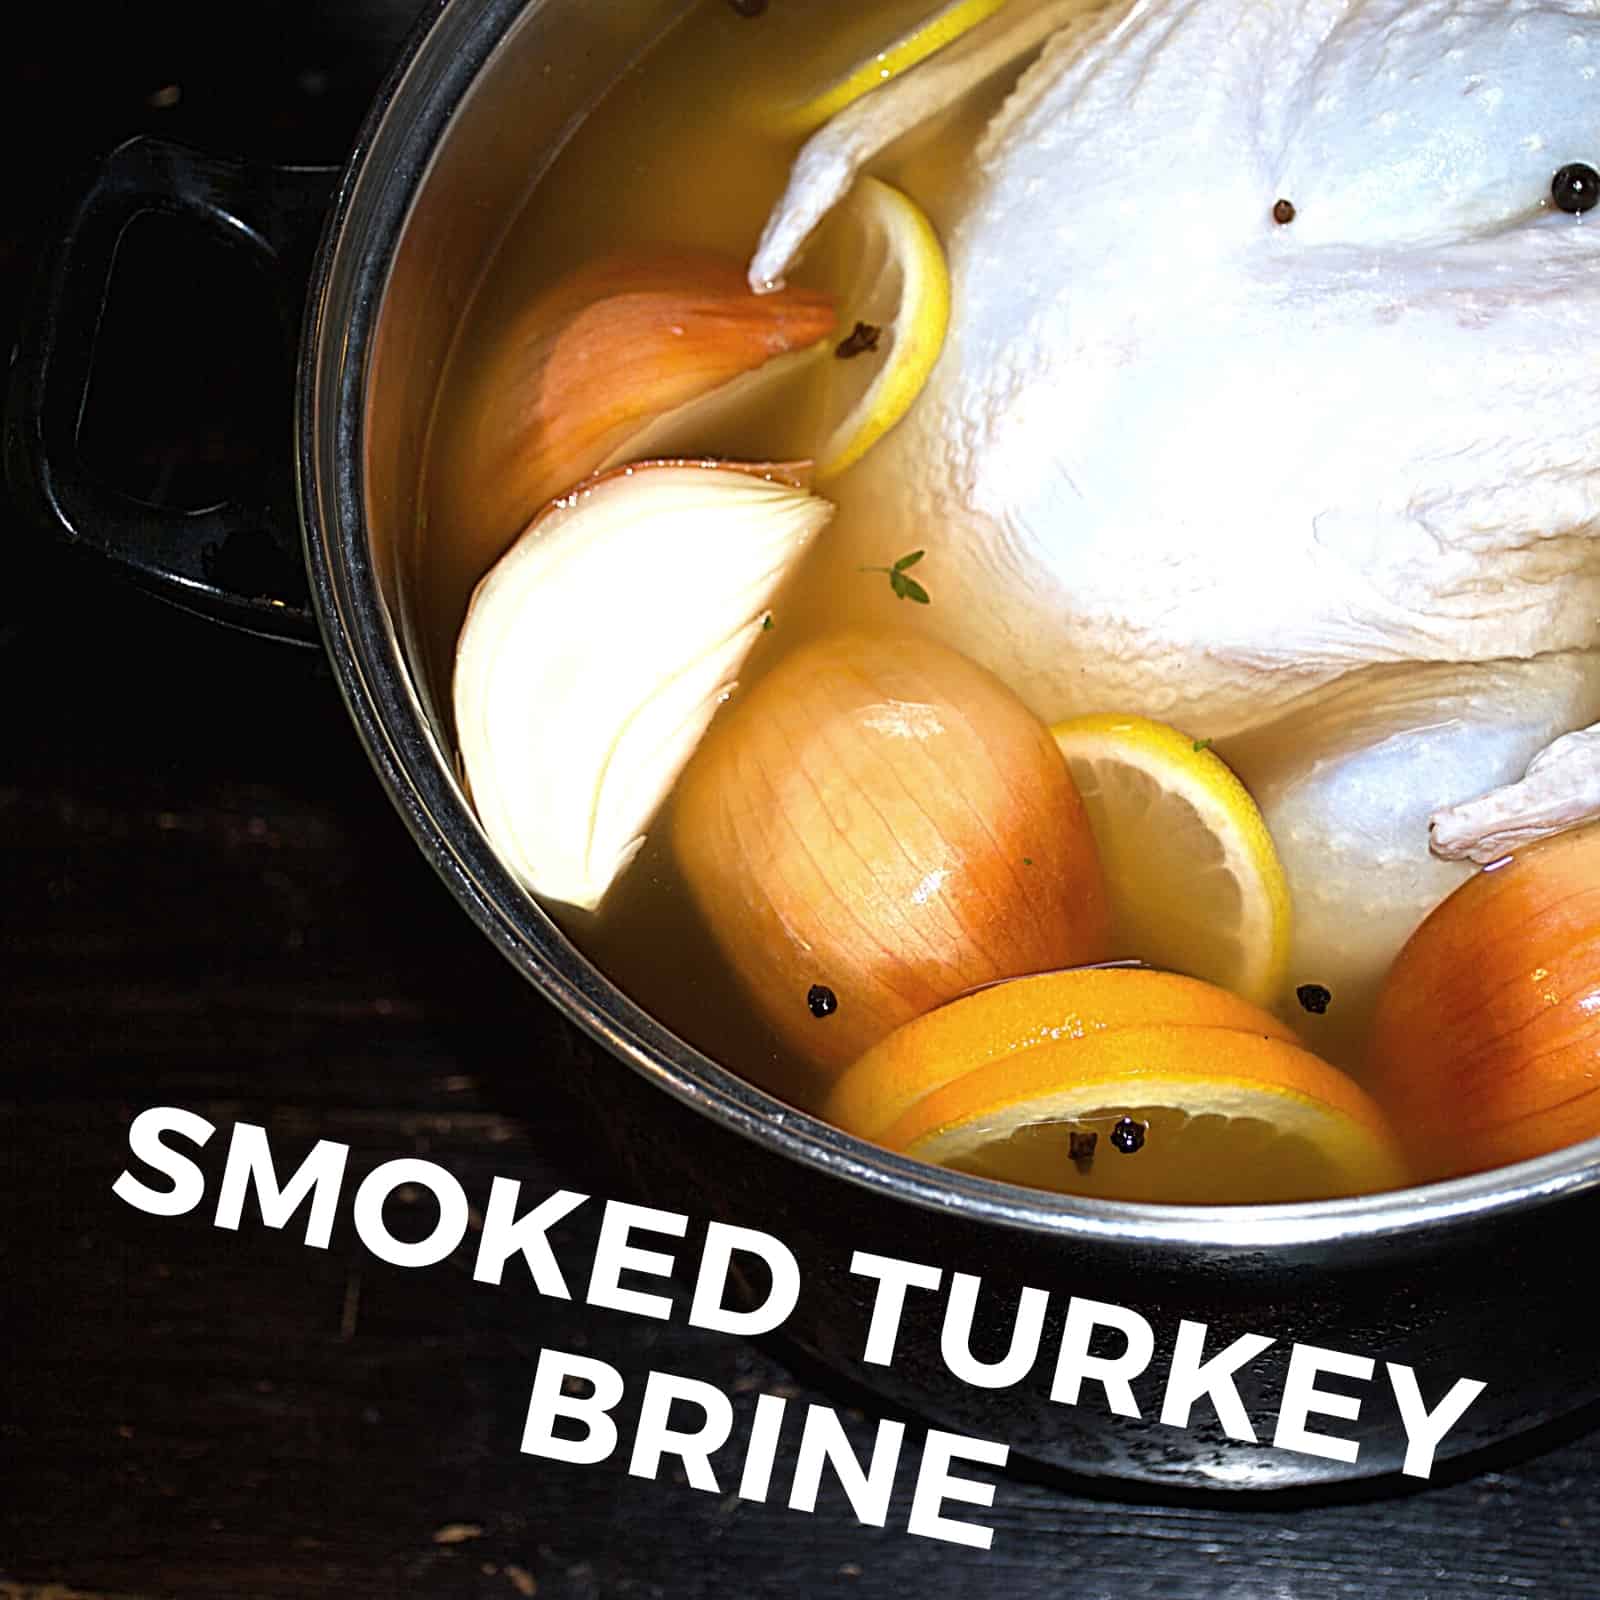 Smoked Turkey brine